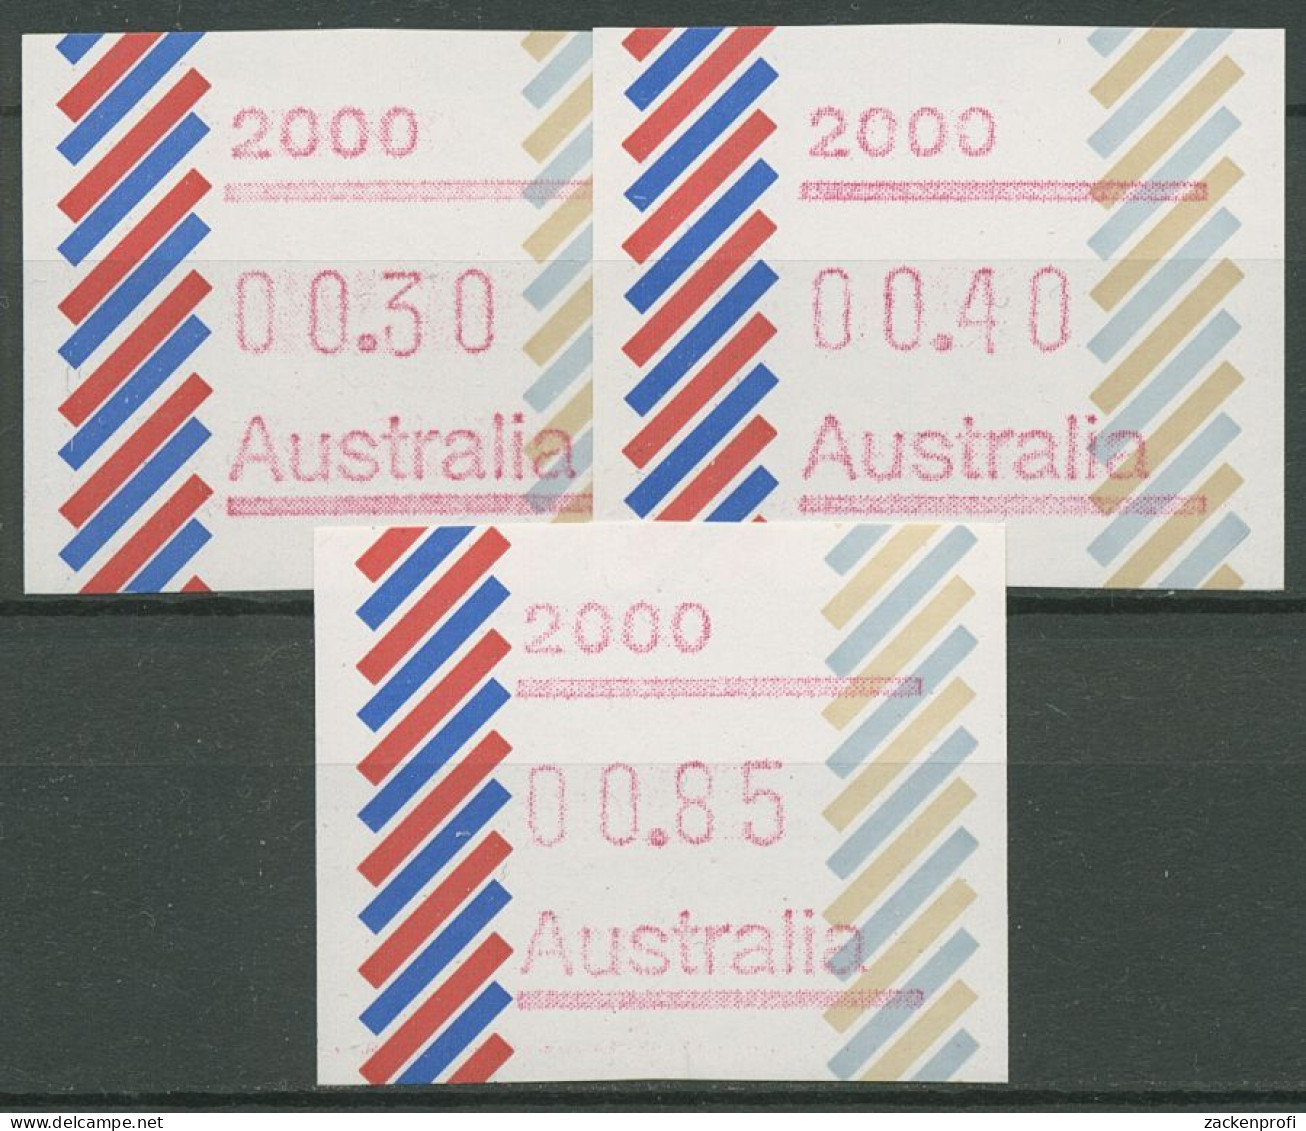 Australien 1984 Balken Tastensatz Automatenmarke 1 S1, 2000 Postfrisch - Viñetas De Franqueo [ATM]